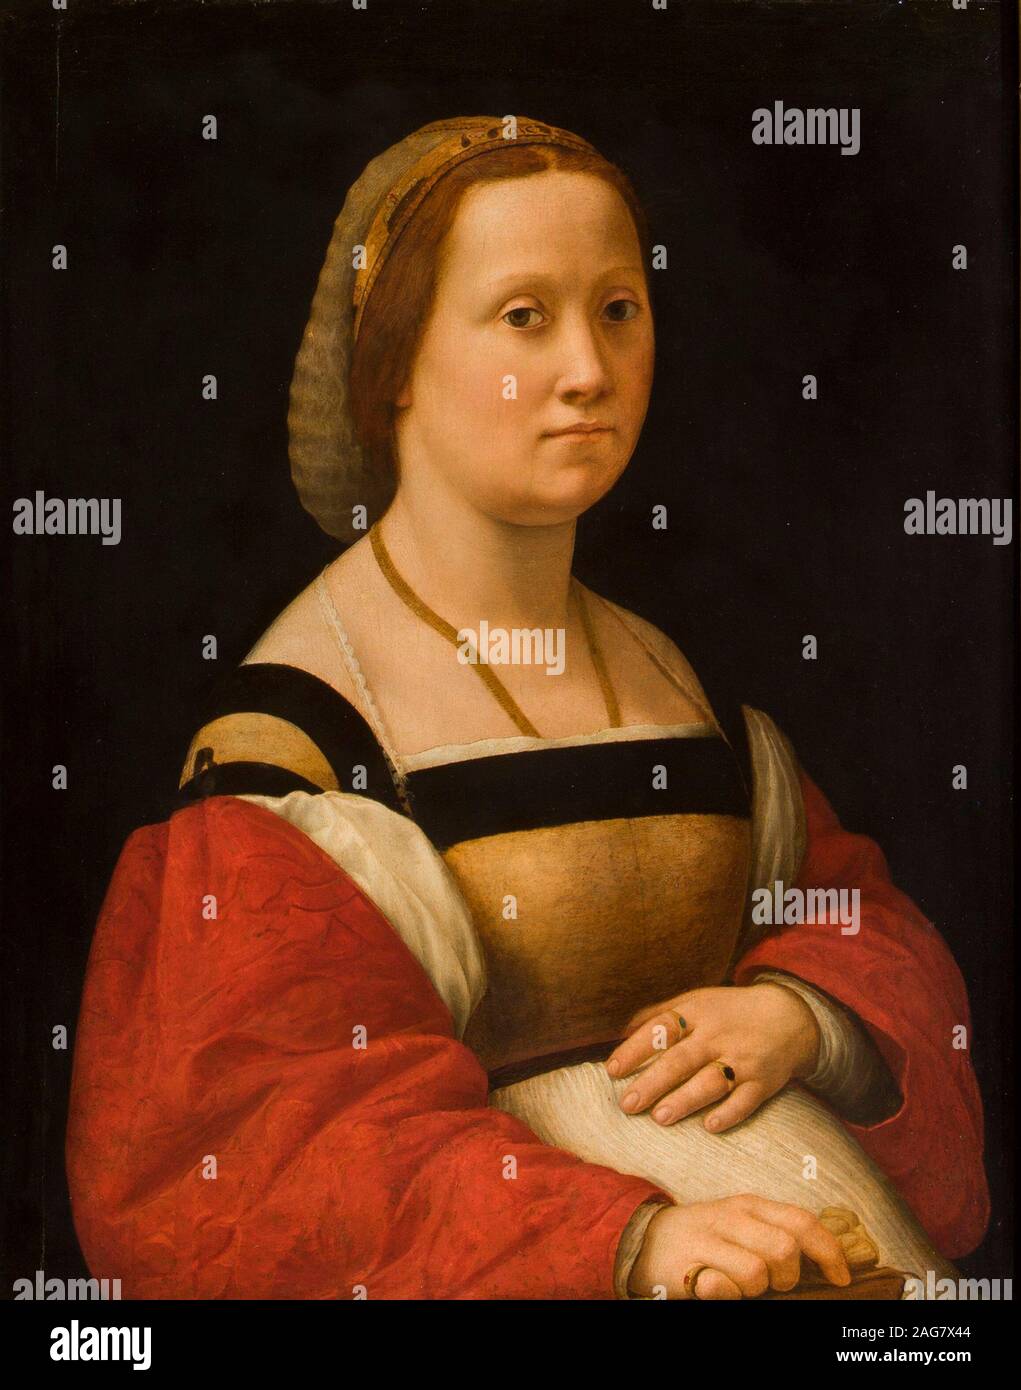 La gravida, 1505-1506. Presenti nella collezione di Palazzo Pitti a Firenze. Foto Stock